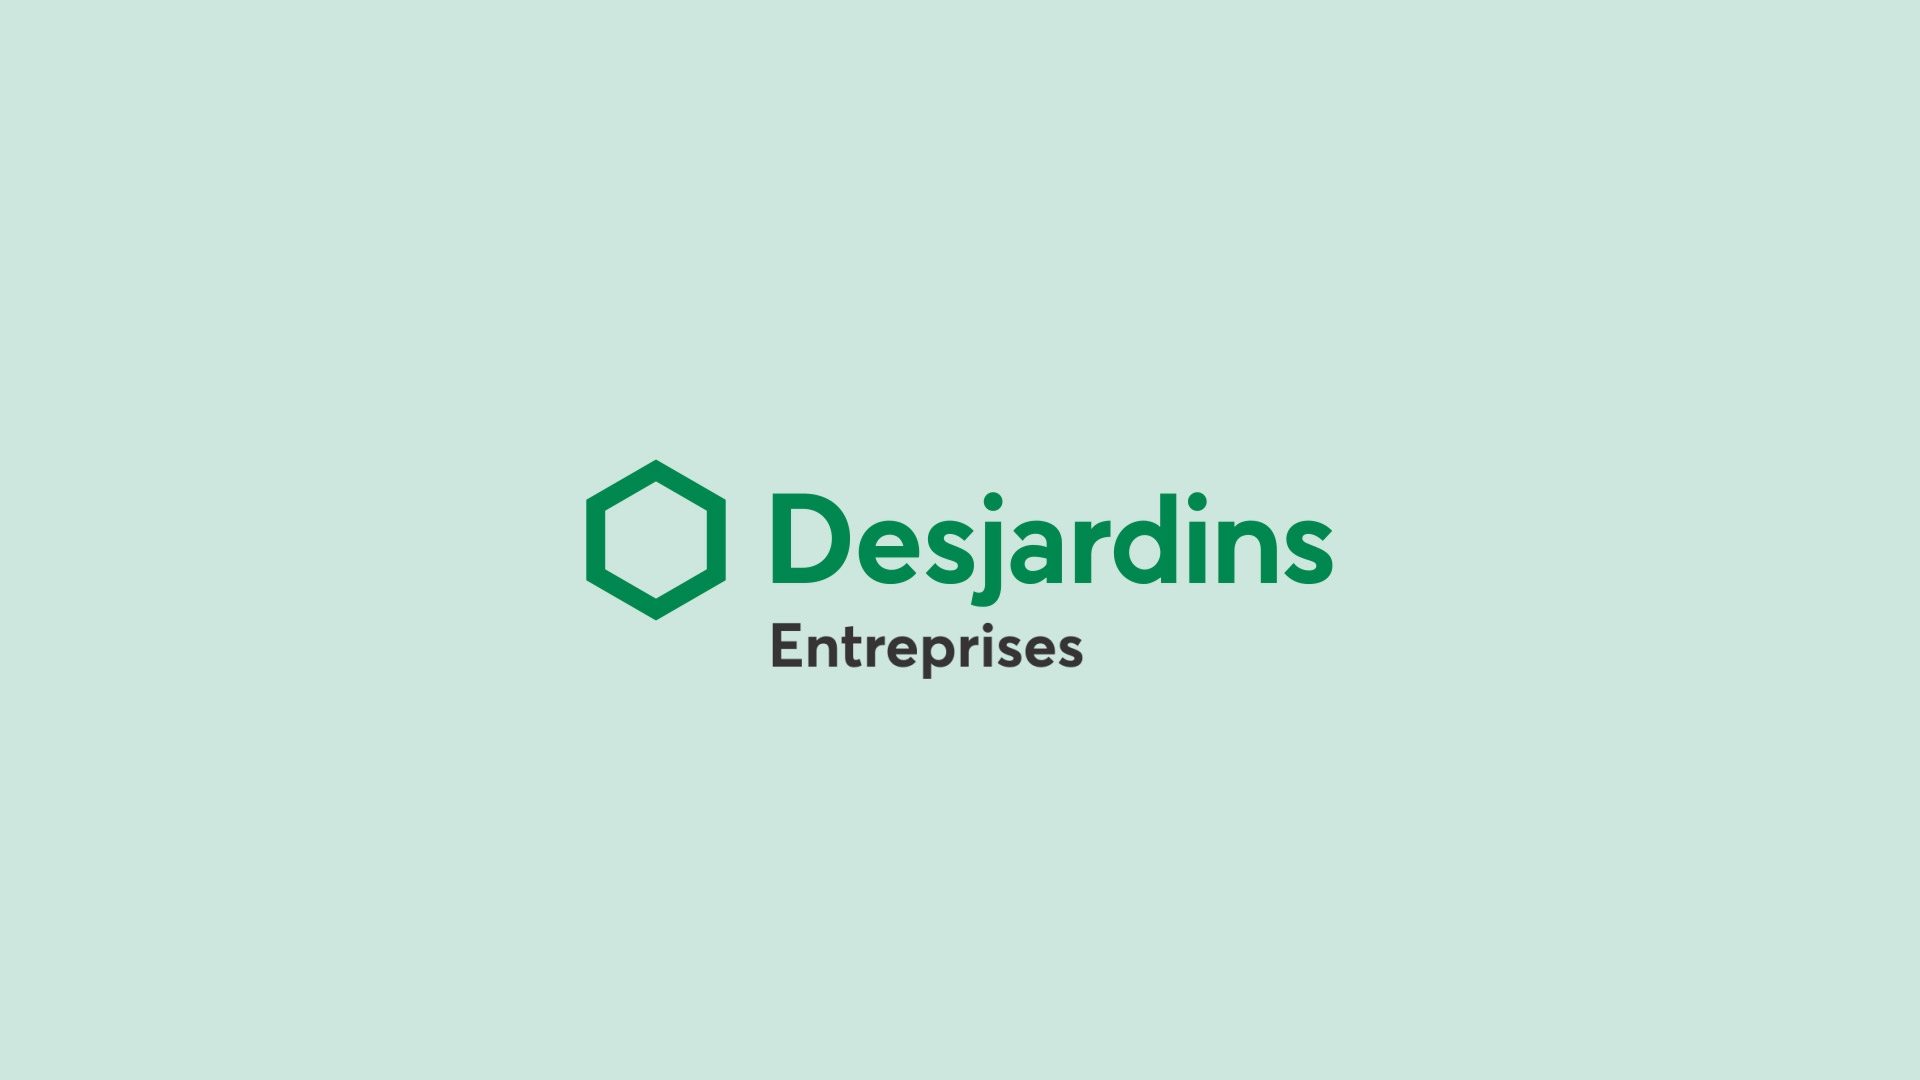 Desjardins_German Moreno_DesignerNO-MASK-2018-09-26-08.43.28-PM